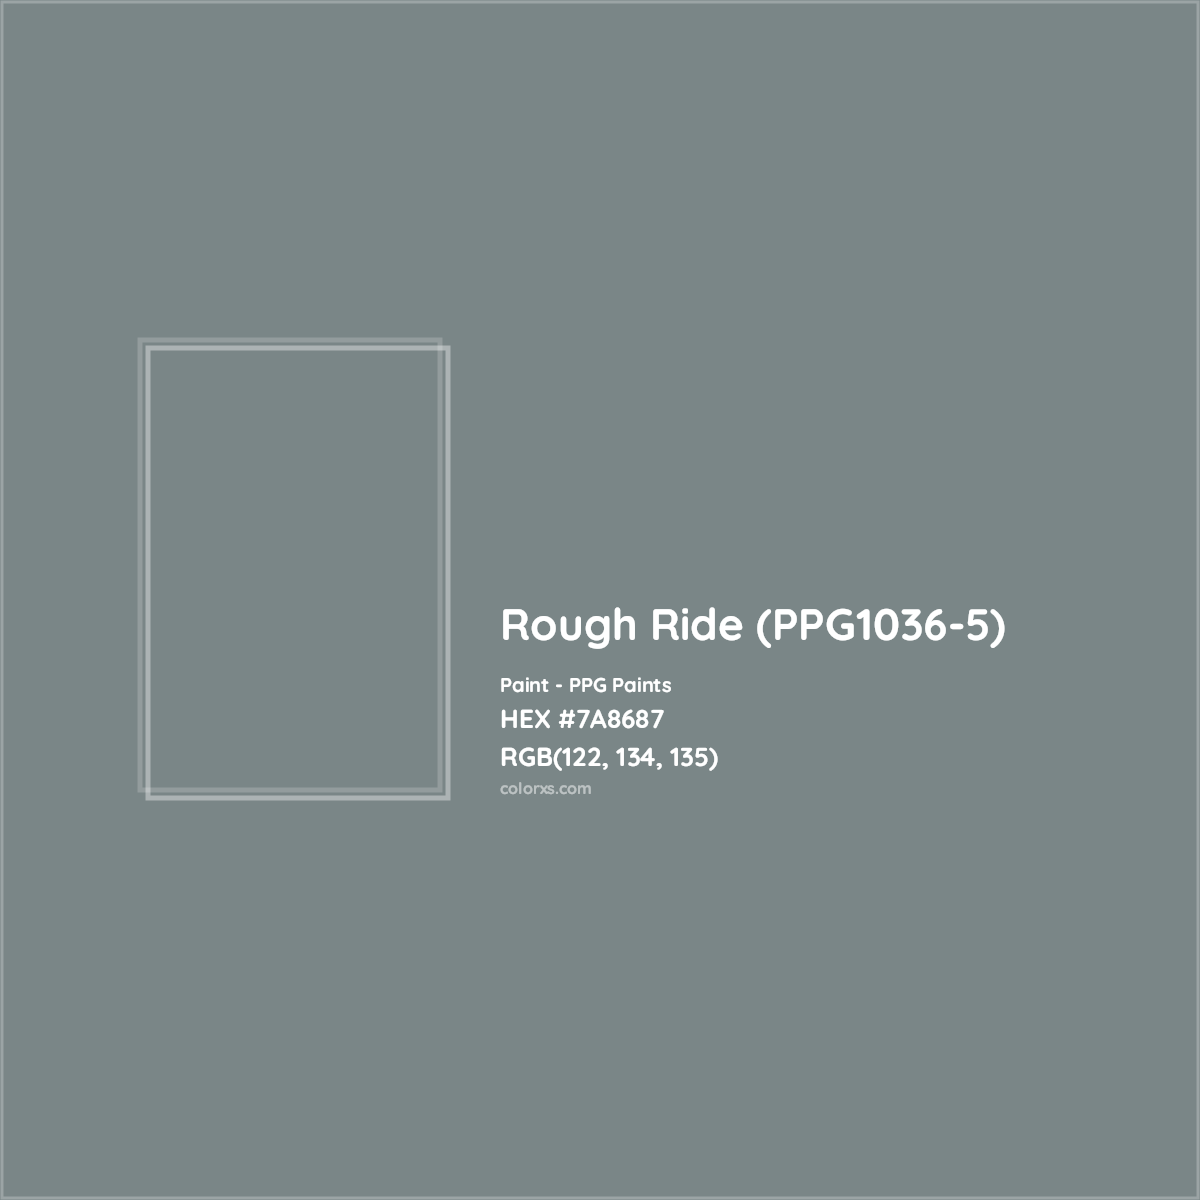 HEX #7A8687 Rough Ride (PPG1036-5) Paint PPG Paints - Color Code